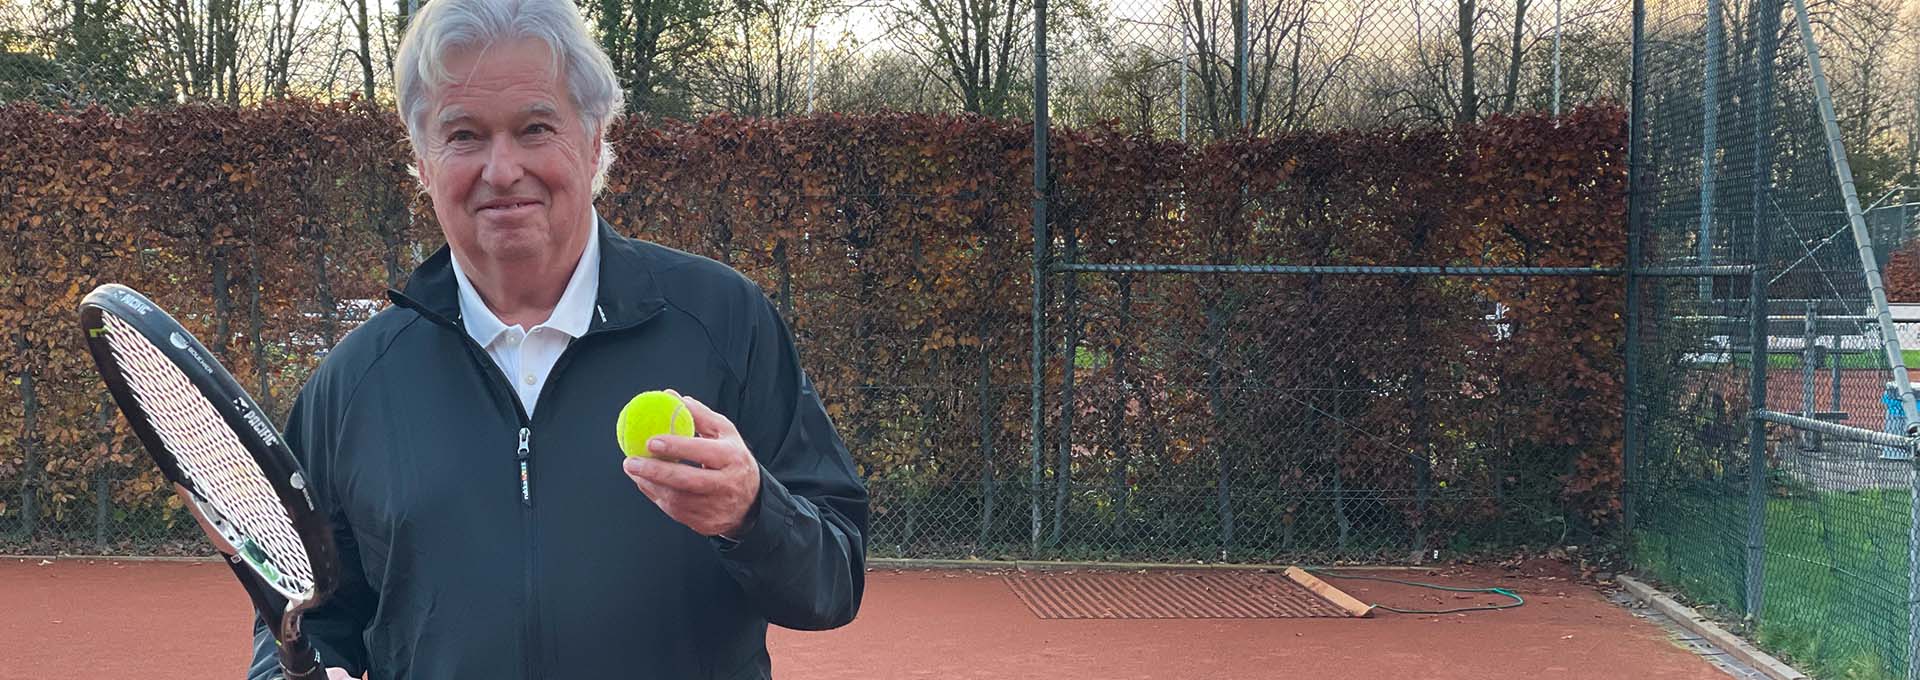 Bernafon Alpha hörapparatanvändare (man) med tennisboll och racket i handen på banan tittar in i kameran redo att spela